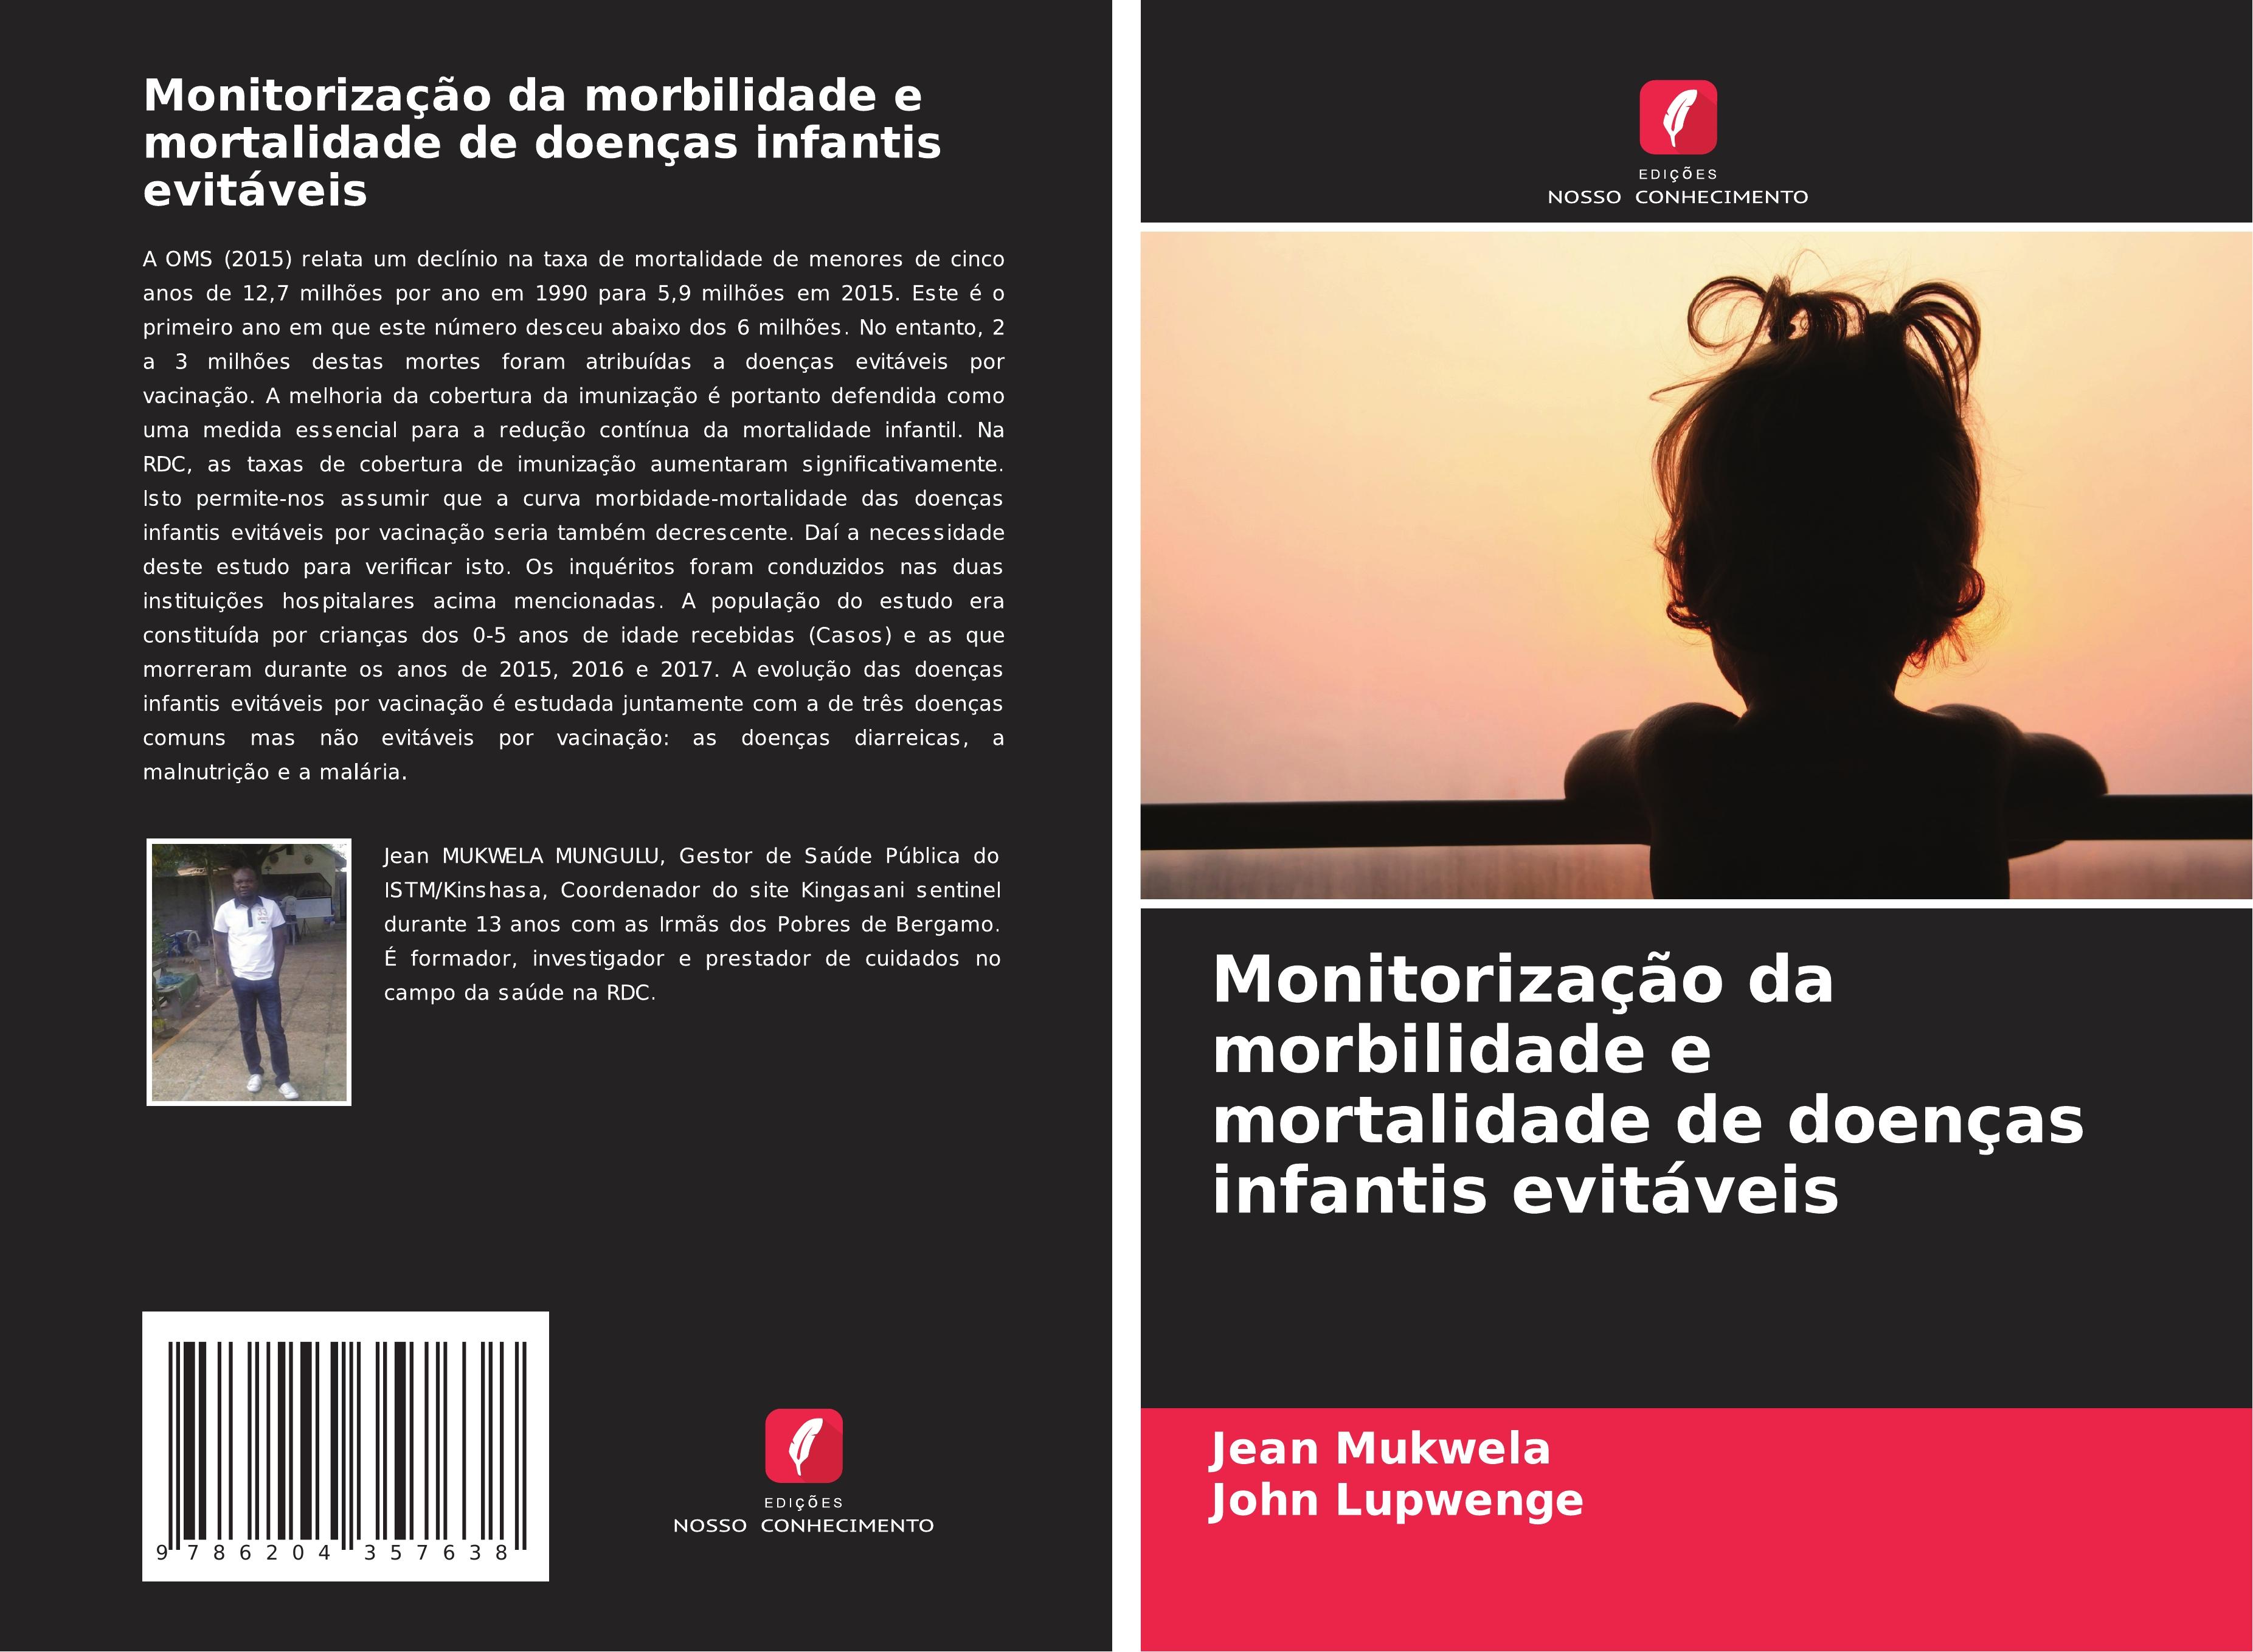 Monitorização da morbilidade e mortalidade de doenças infantis evitáveis - Mukwela, Jean Lupwenge, John